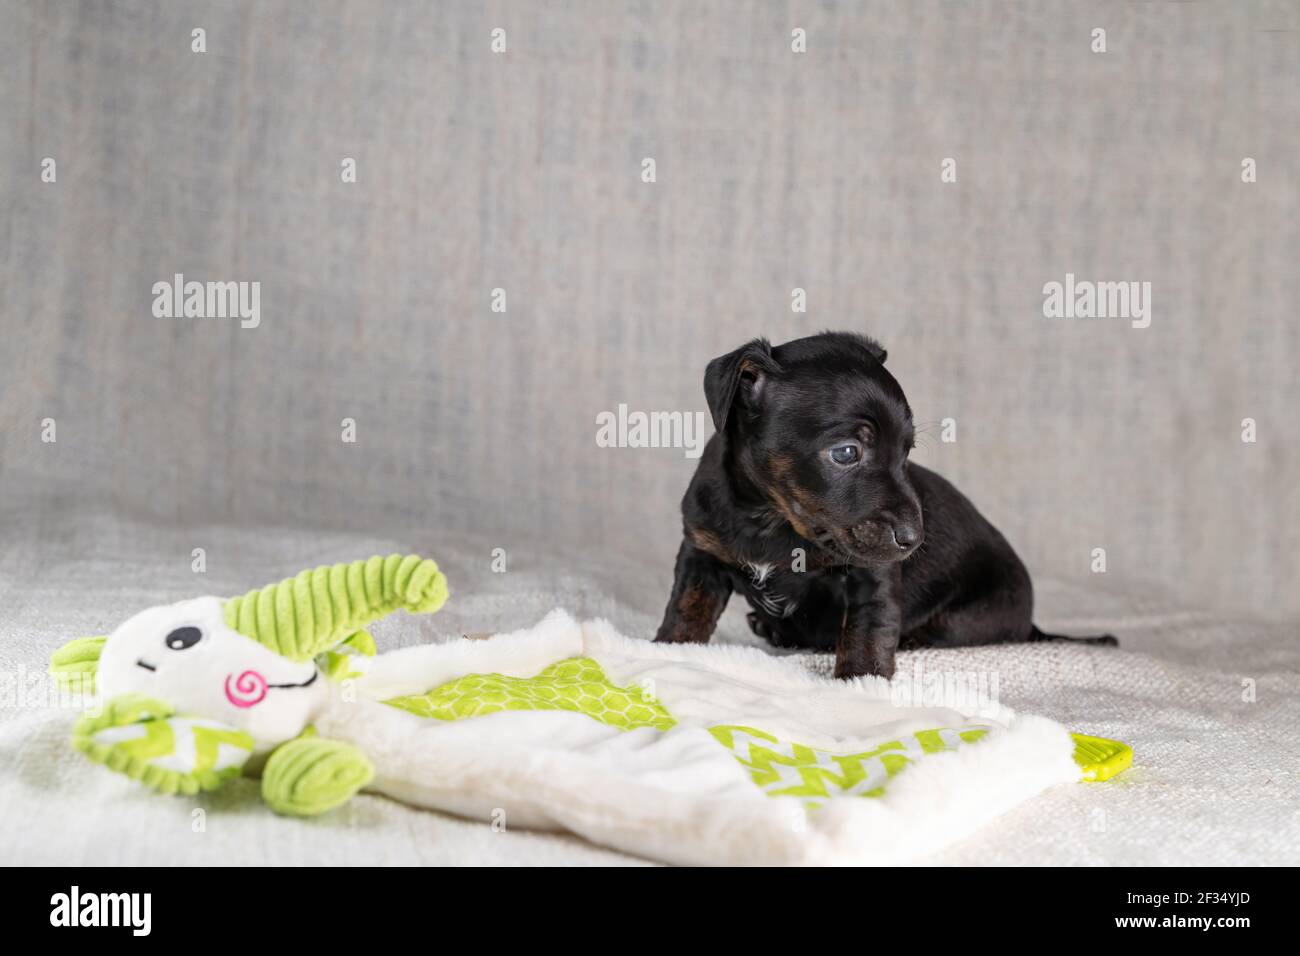 Braun und schwarz brindle Jack Russell Terrier Hund Welpen. Ist stur mit  einem Spielzeug Elefant. Hund von der Seite gesehen. Cremefarbener  Hintergrund Stockfotografie - Alamy